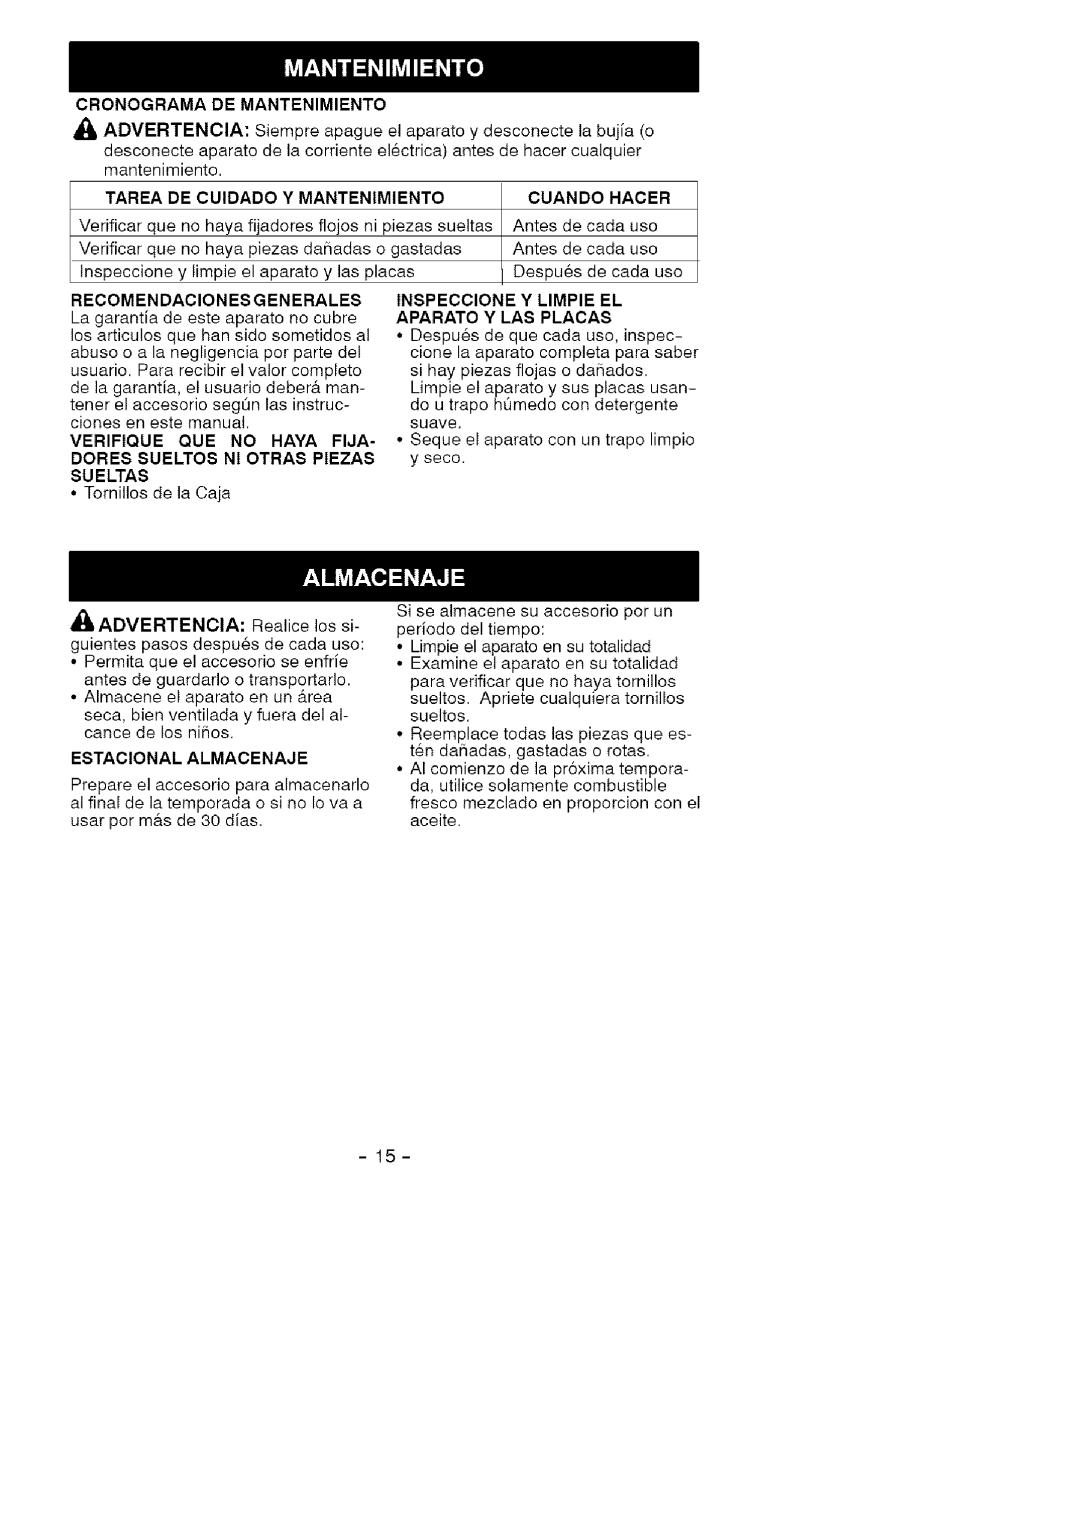 Craftsman 358.792421 manual Cronograma De Mantenimiento, Tarea De Cuidado Y Mantenimiento, Hacer 